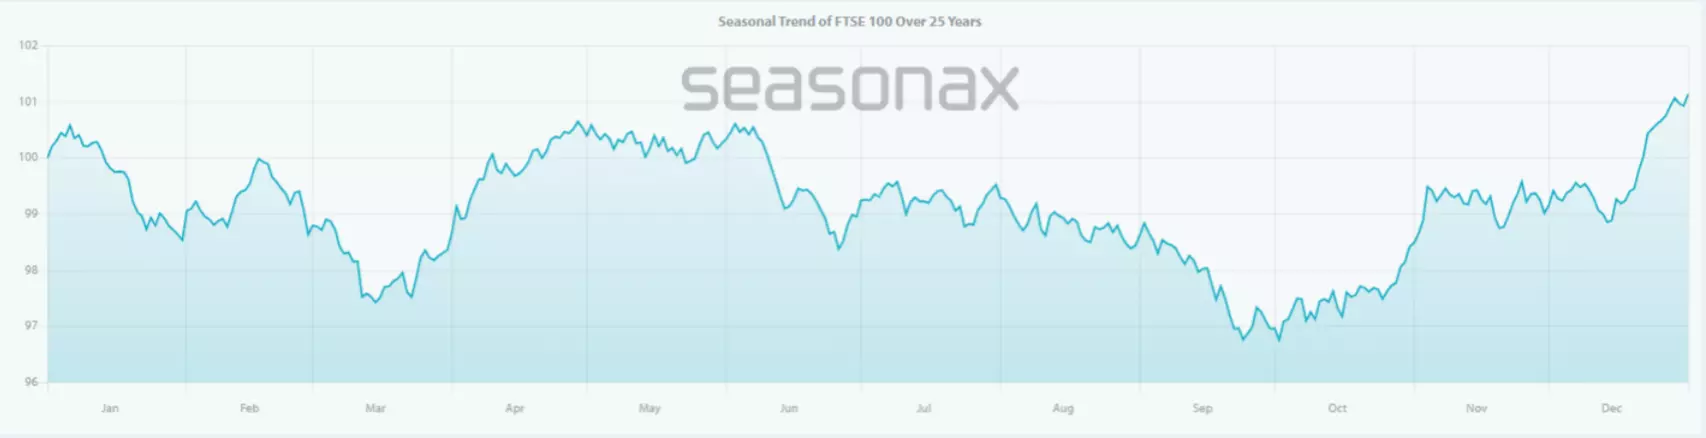 FTSE 100 seasonality chart